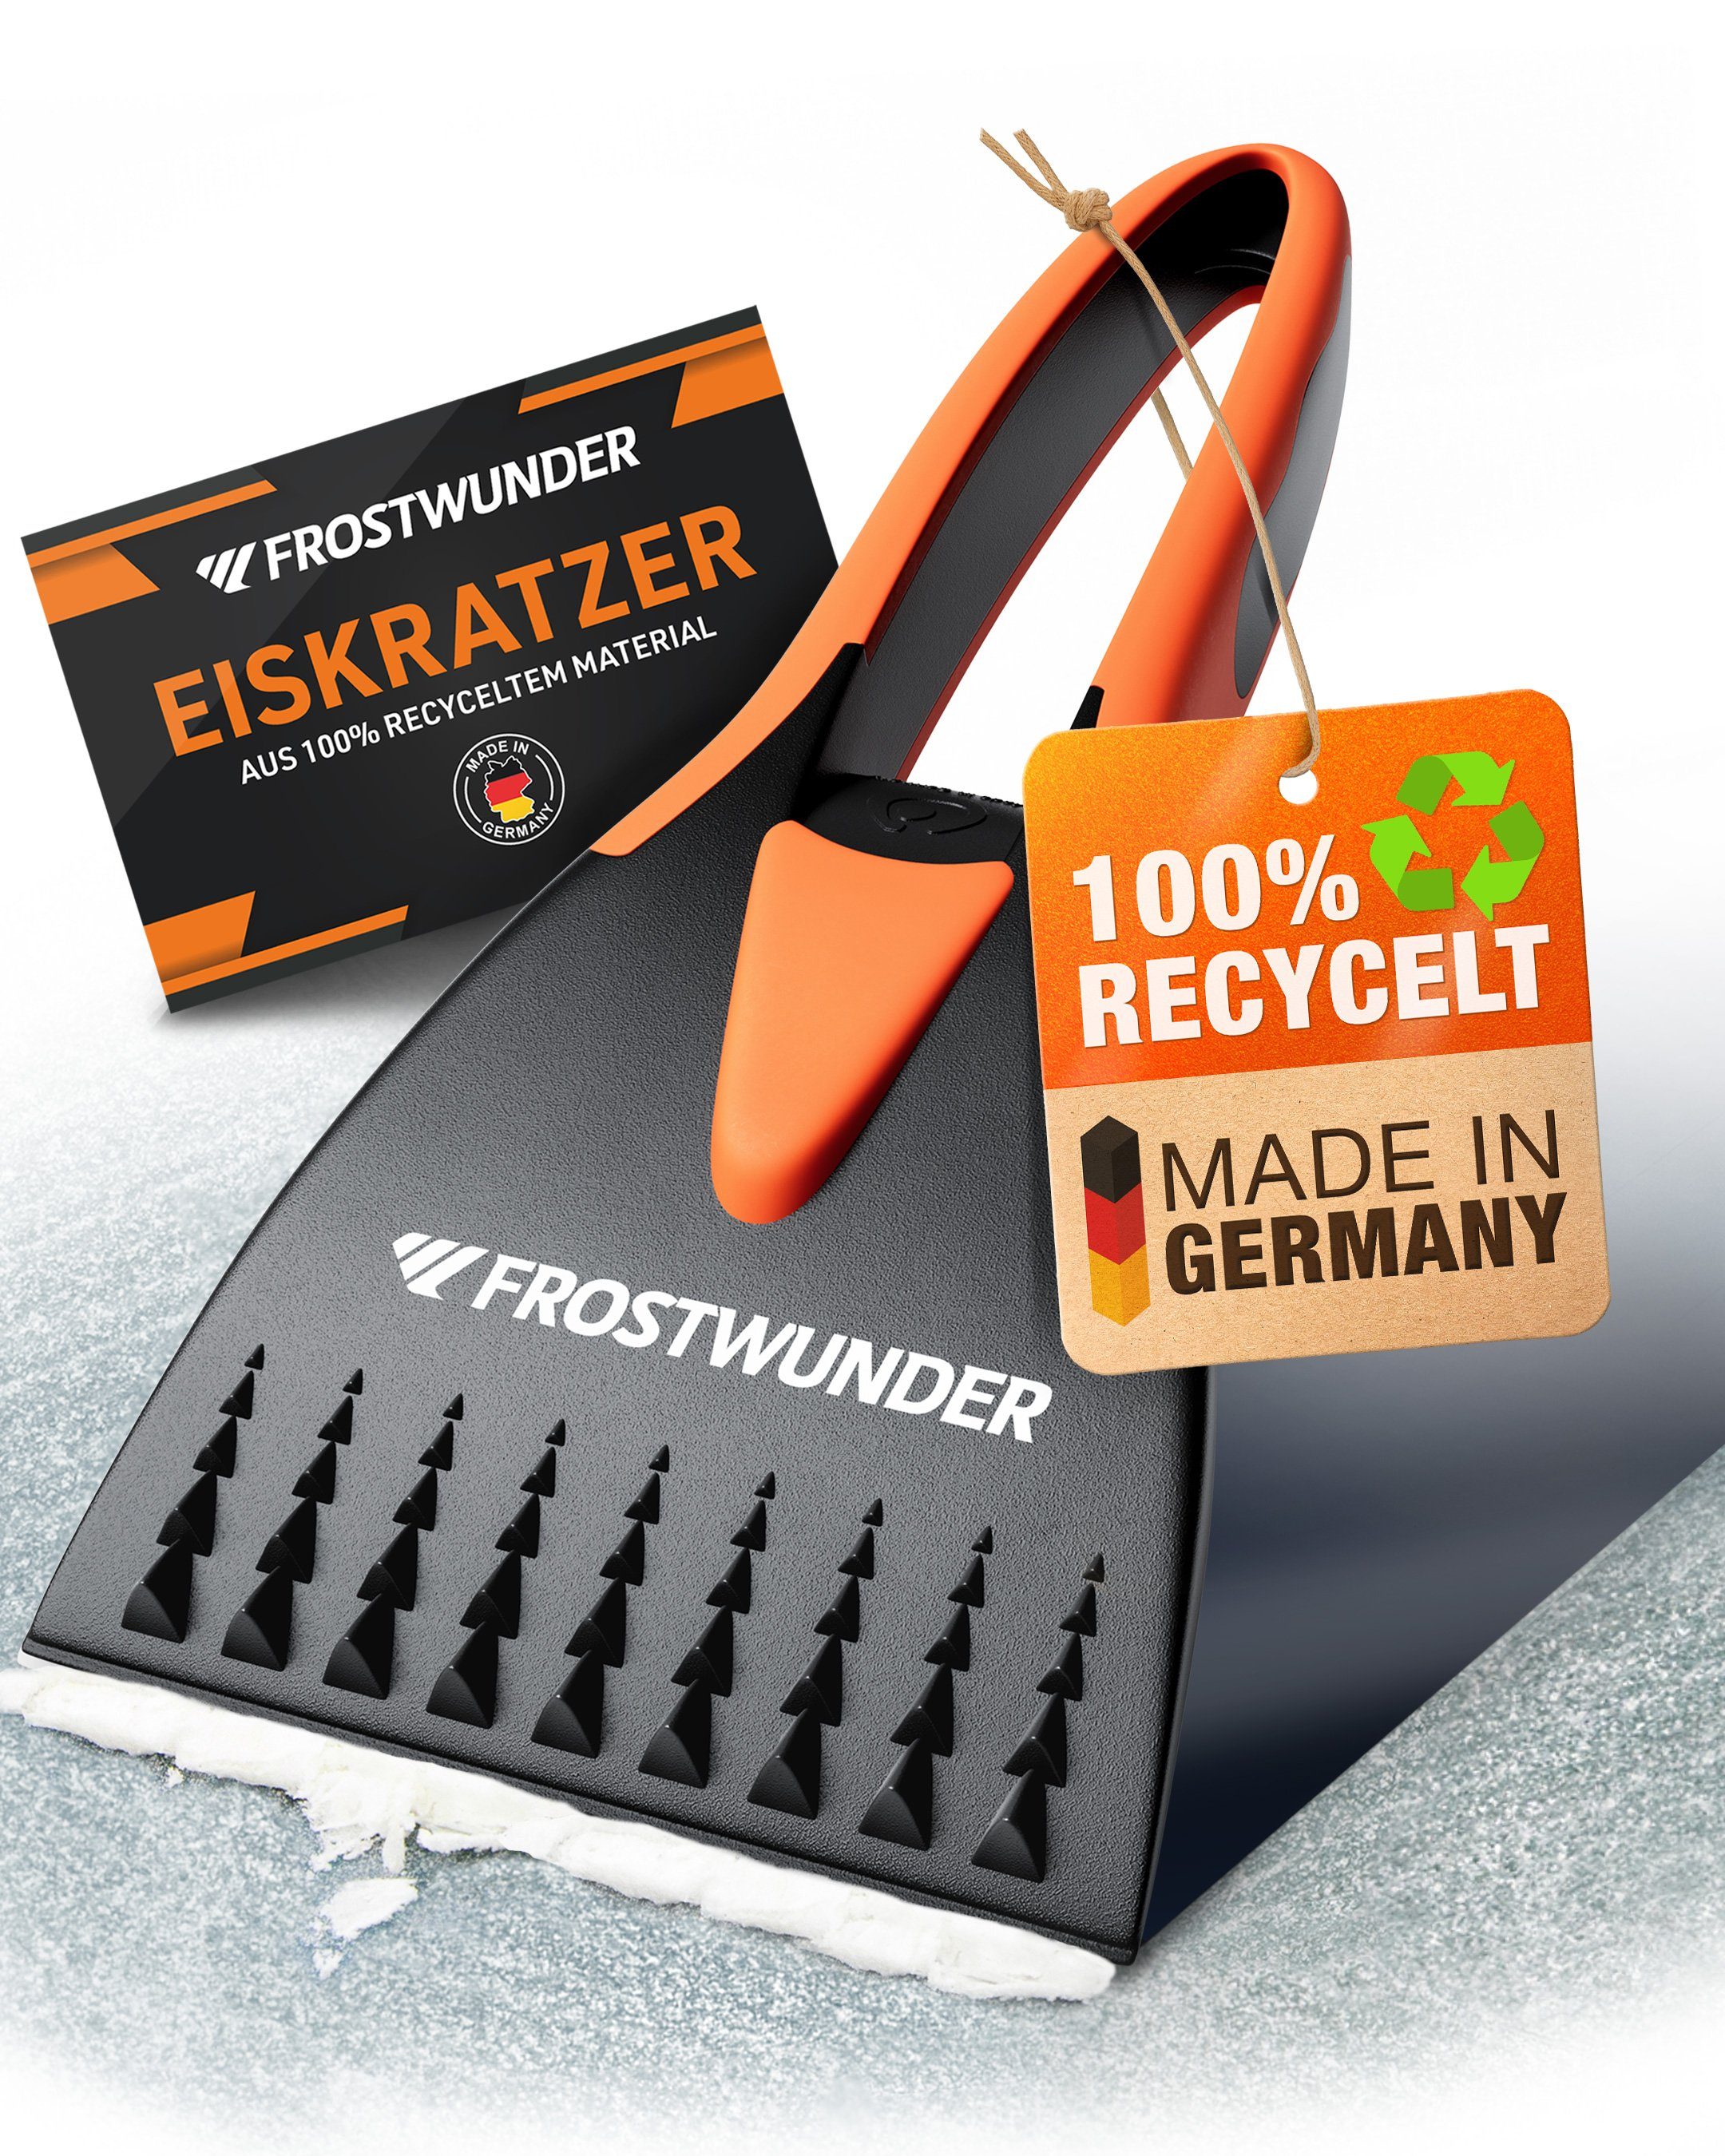 FROSTWUNDER Eiskratzer Eiskratzer Auto [Made in Germany] 100% recycelter Auto Eiskratzer